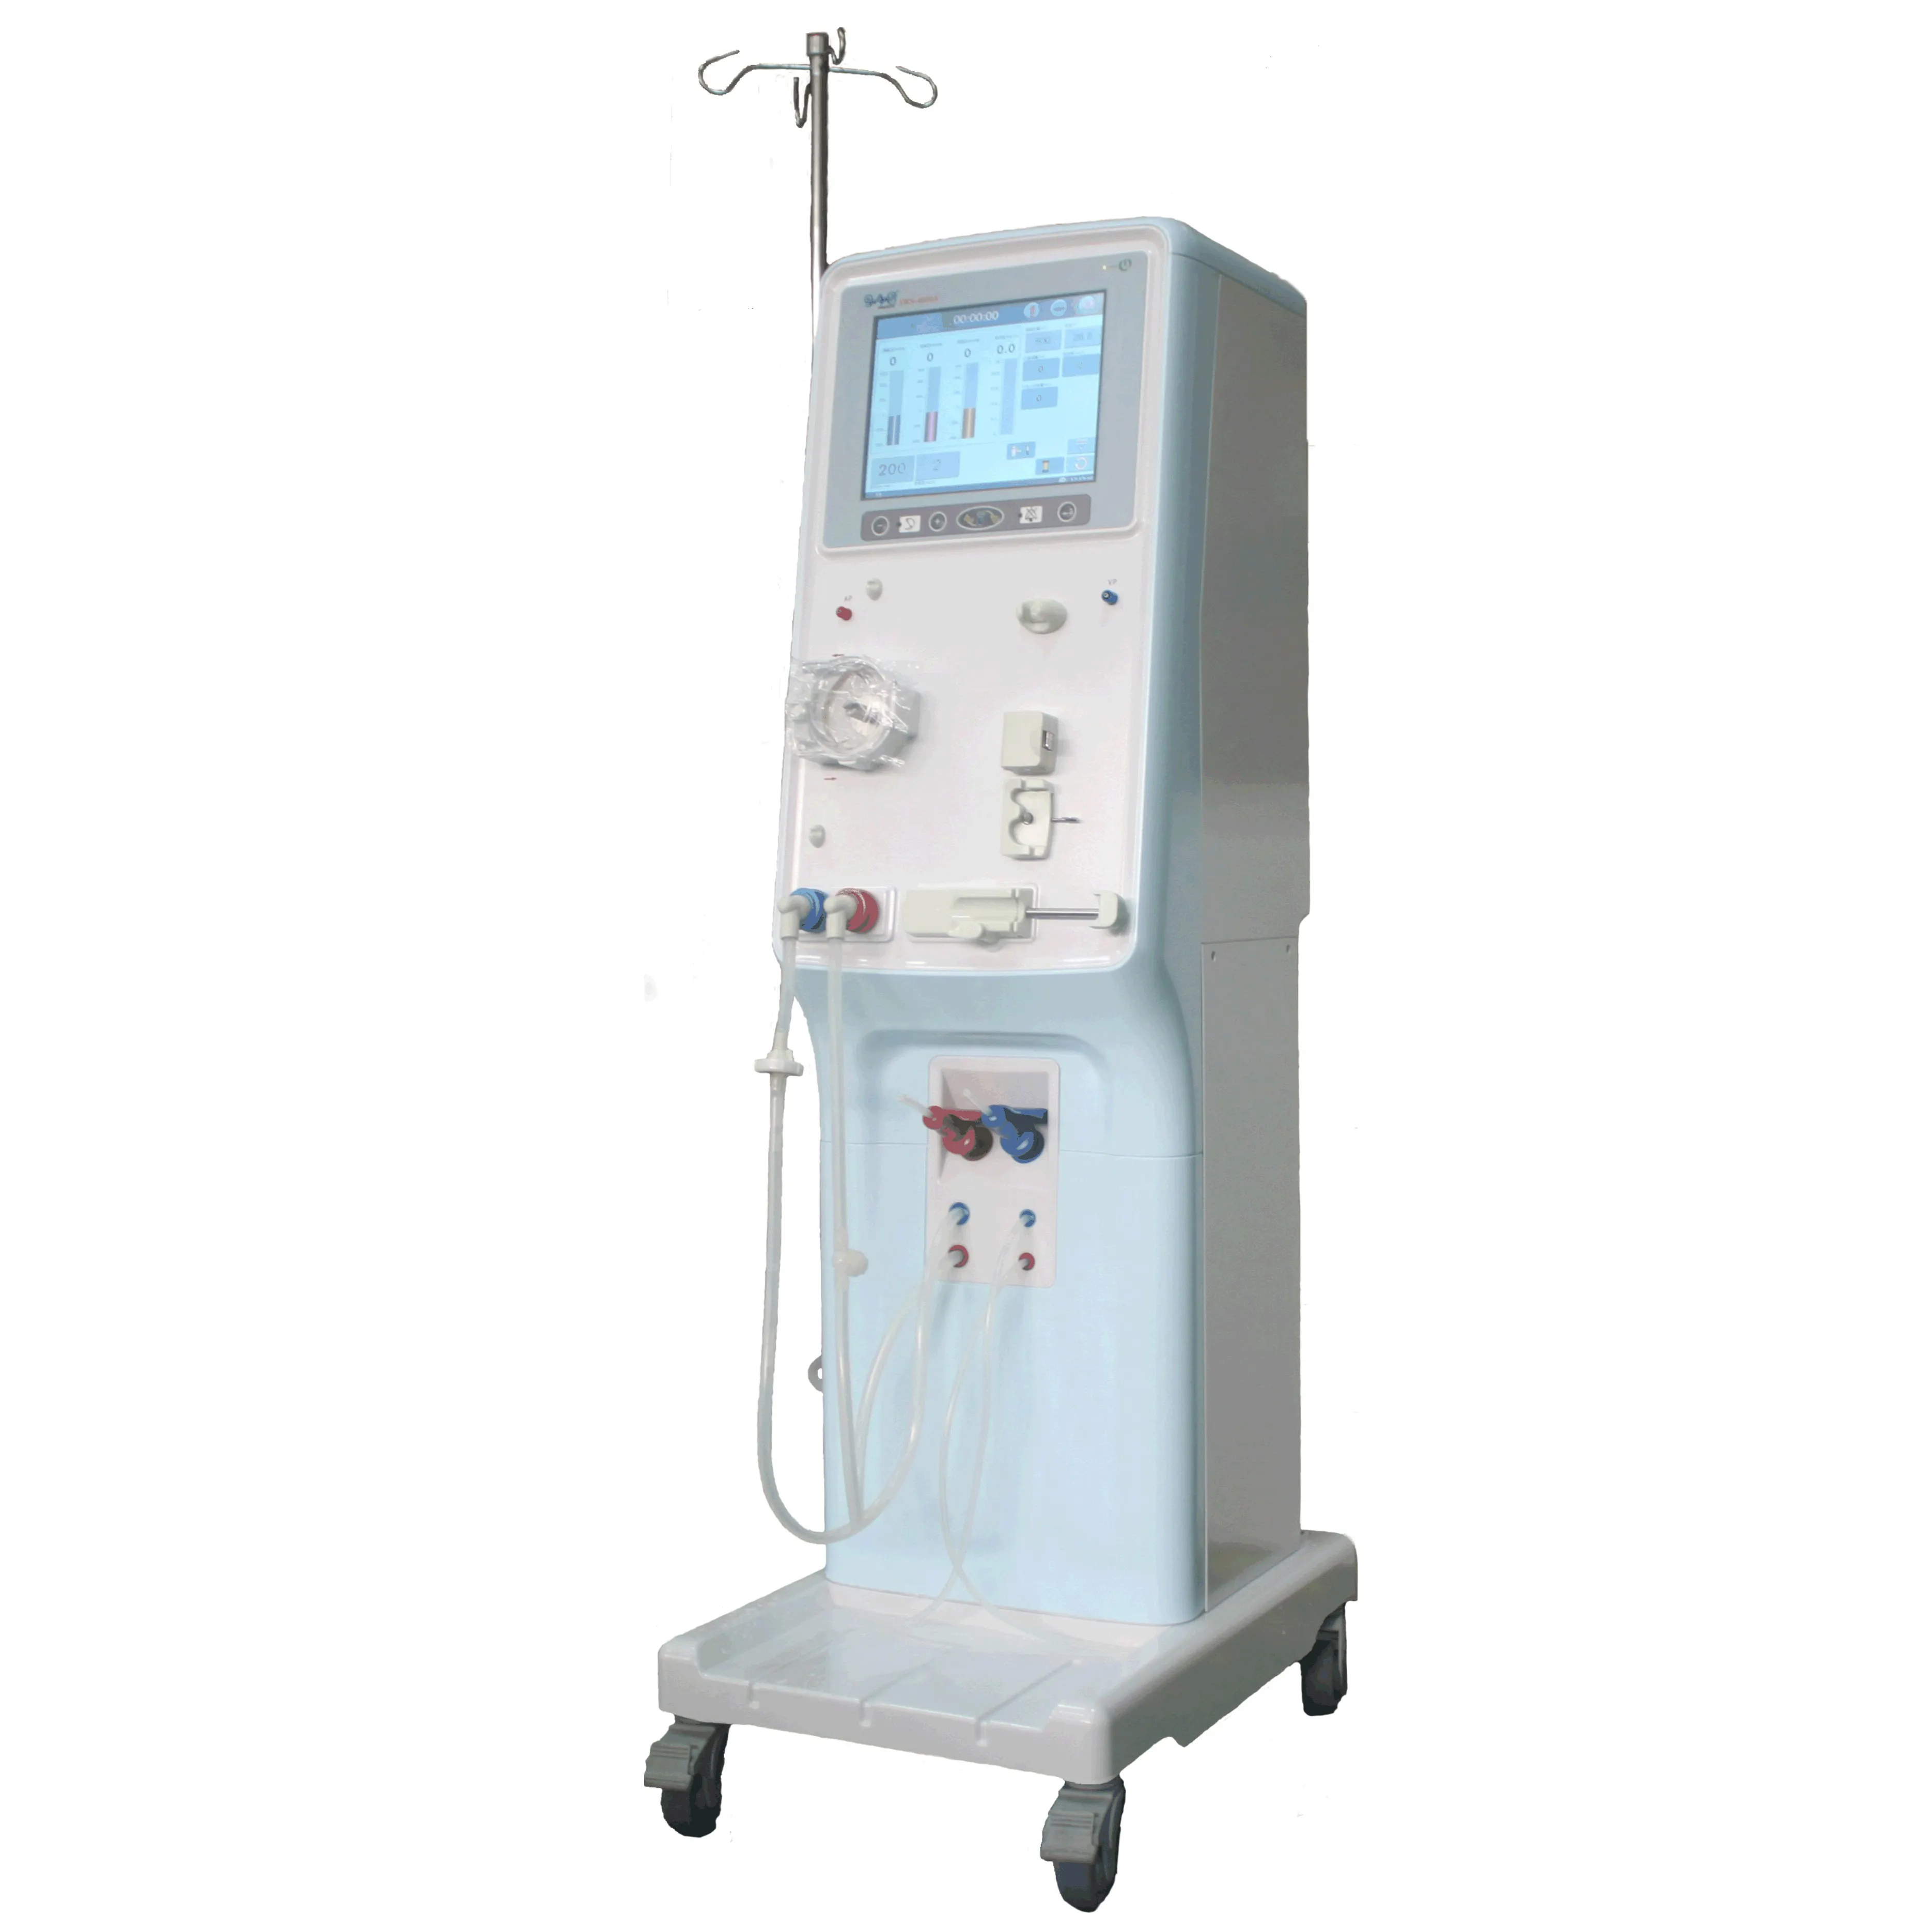 FSWS-4000 Portatile Series Dialysis Blood Lines Machine